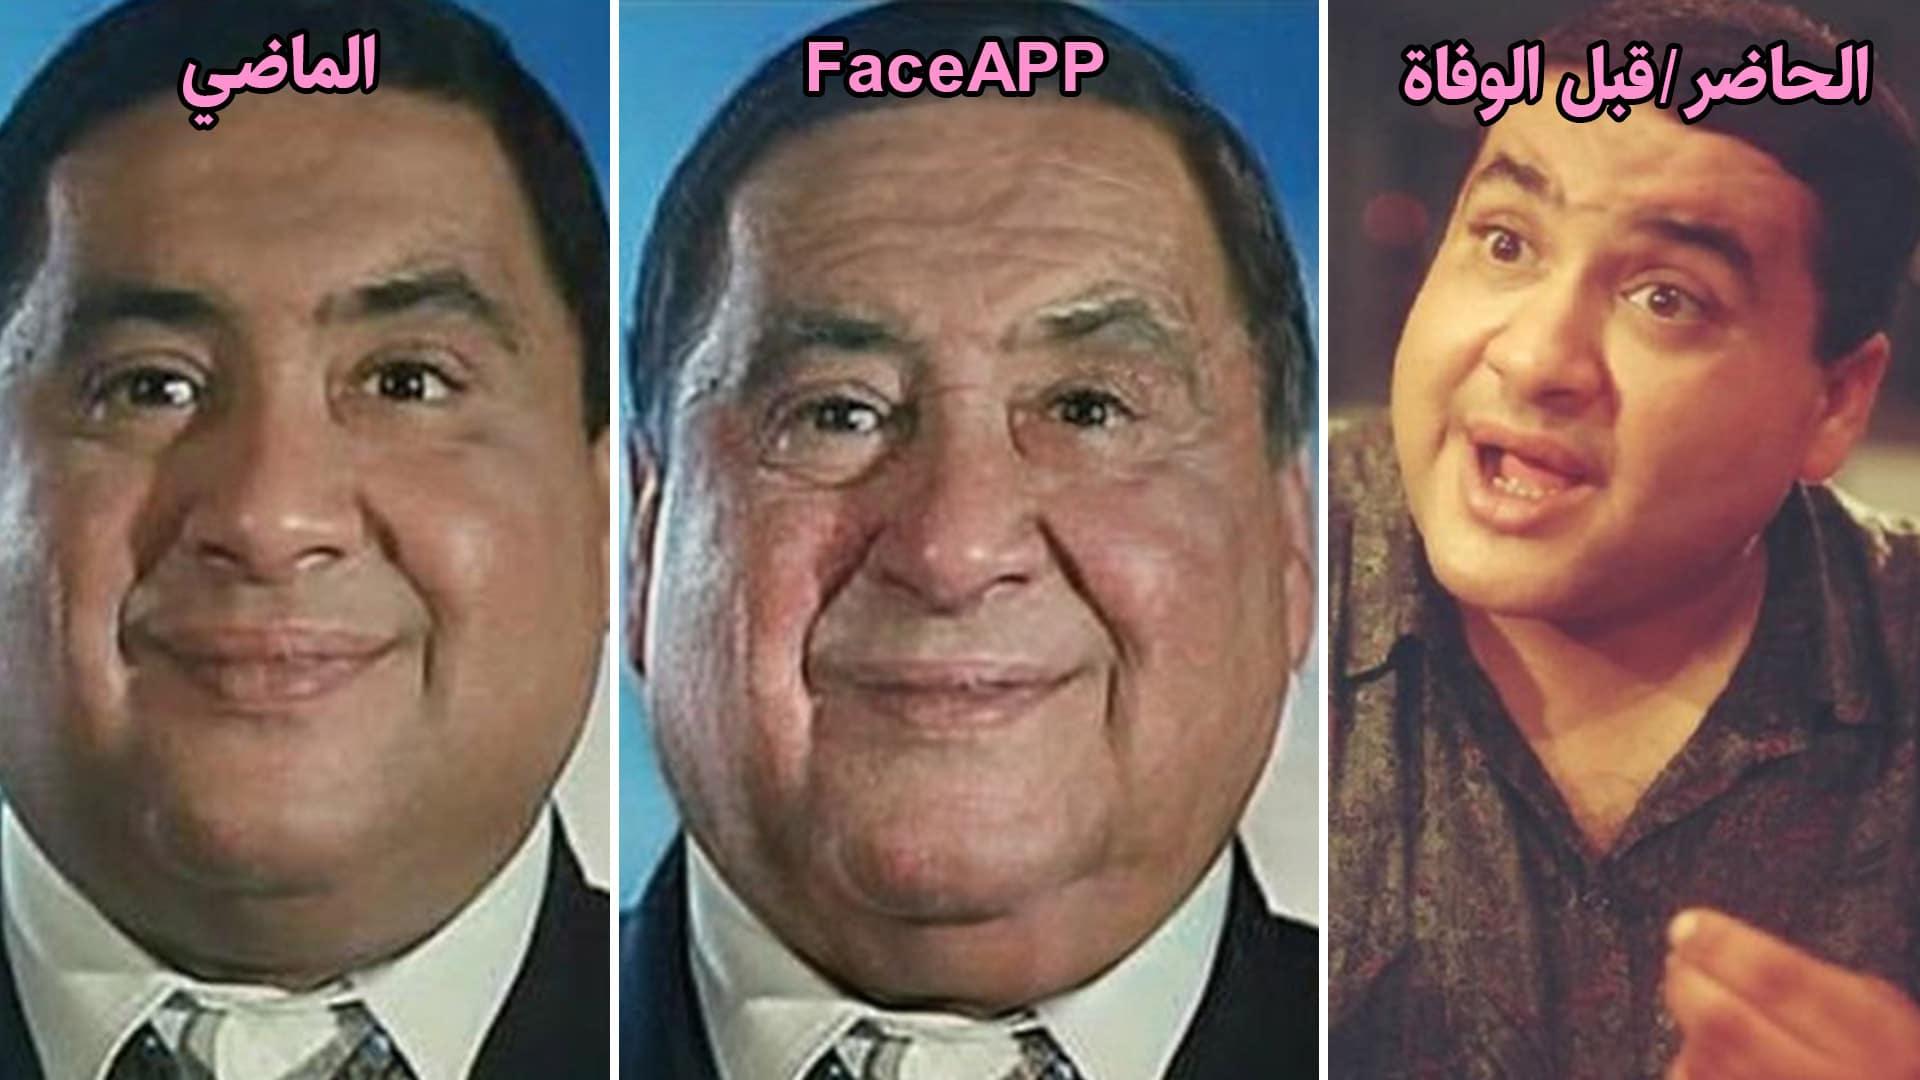 علاء ولي الدين - face app